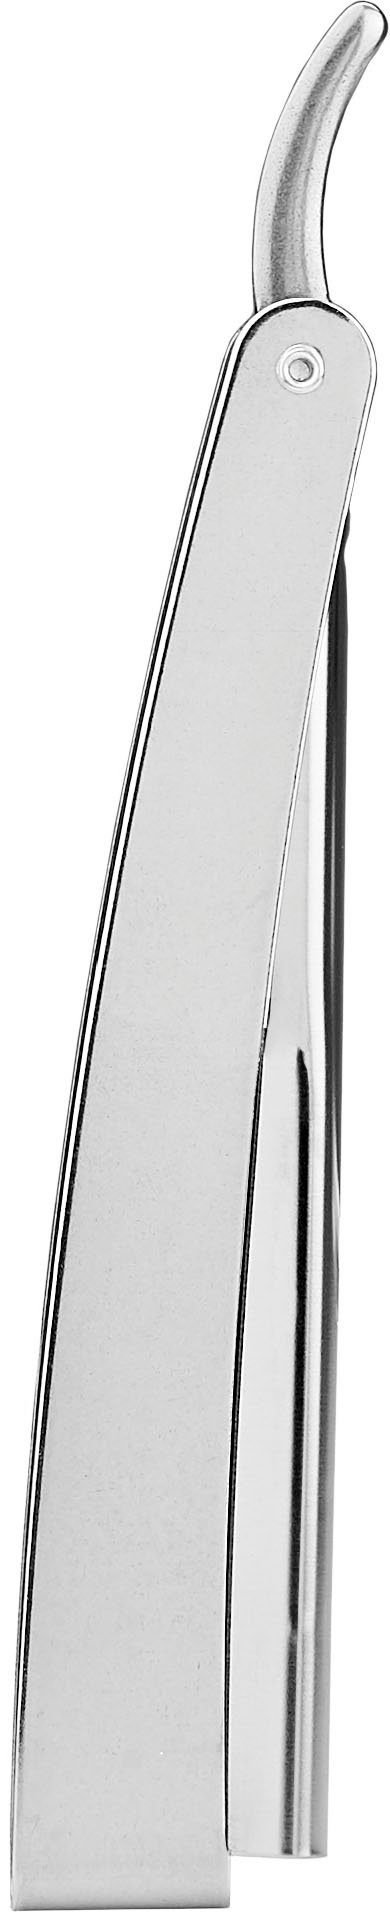 Rasiermesser FRIPAC praktischem Klappgriff silberfarben, mit Rasiermesser 1955